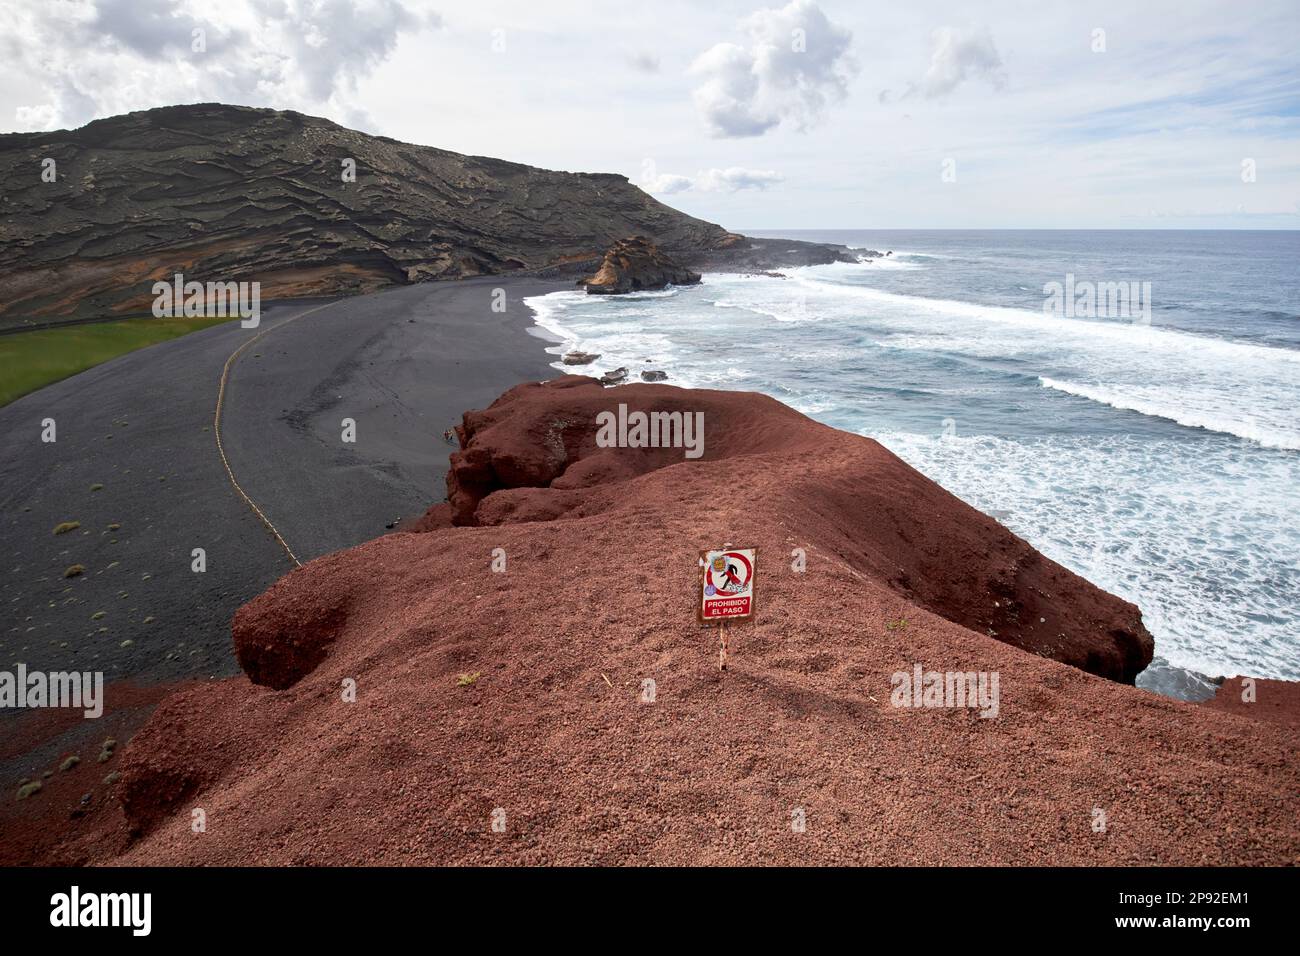 prohibido el paso no entry sign on clifftop at el golfo Lanzarote, Canary Islands, Spain Stock Photo